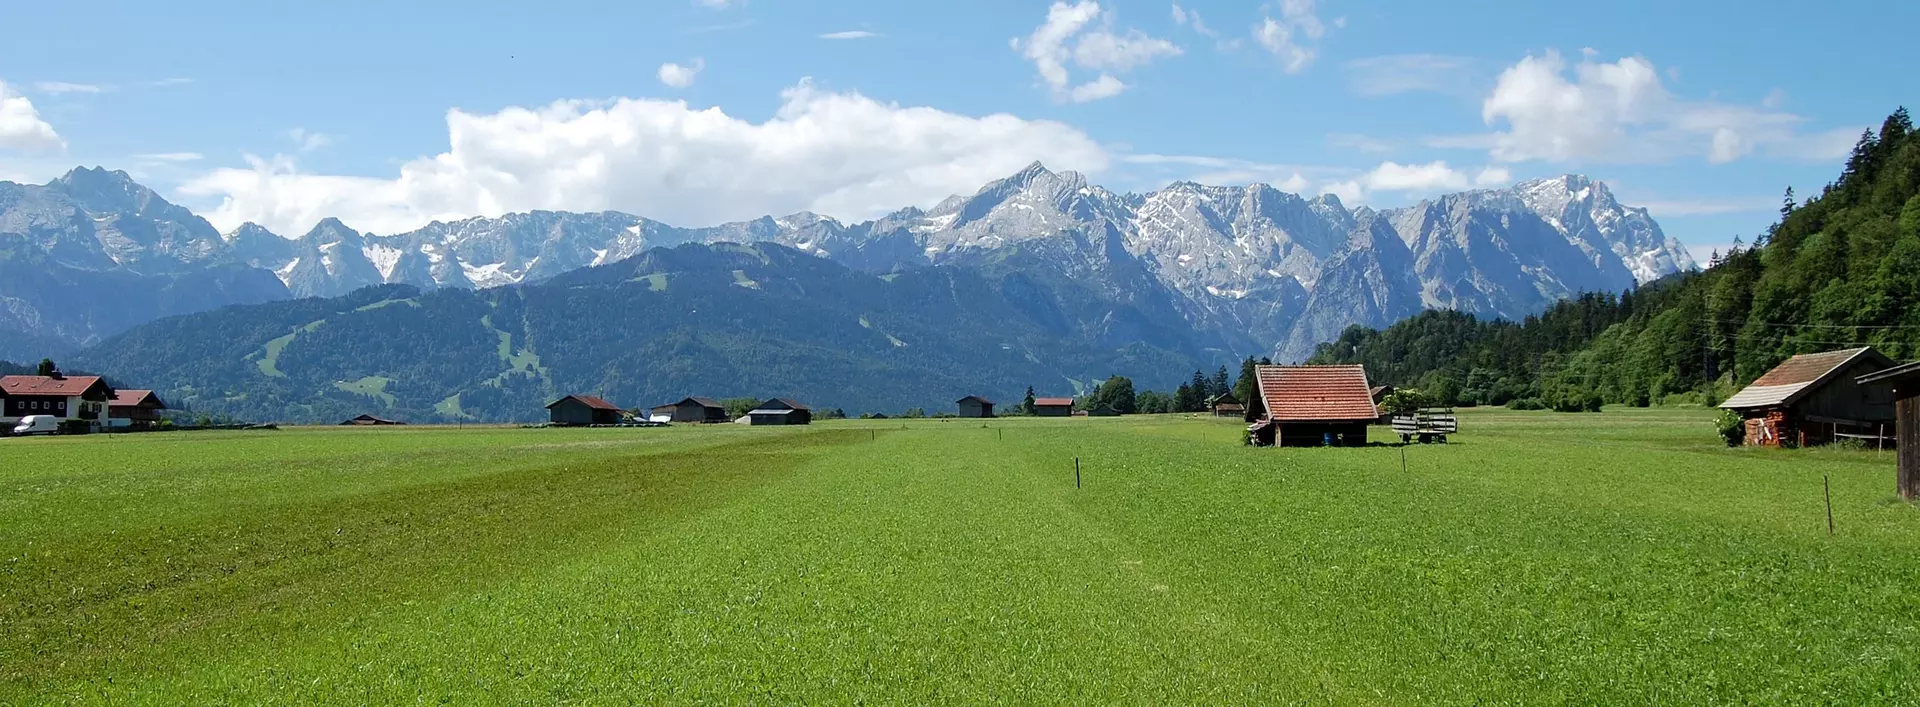 im Urlaub auf dem Bauernhof an der Zugspitze das herrliche Alpenpanorama genießen